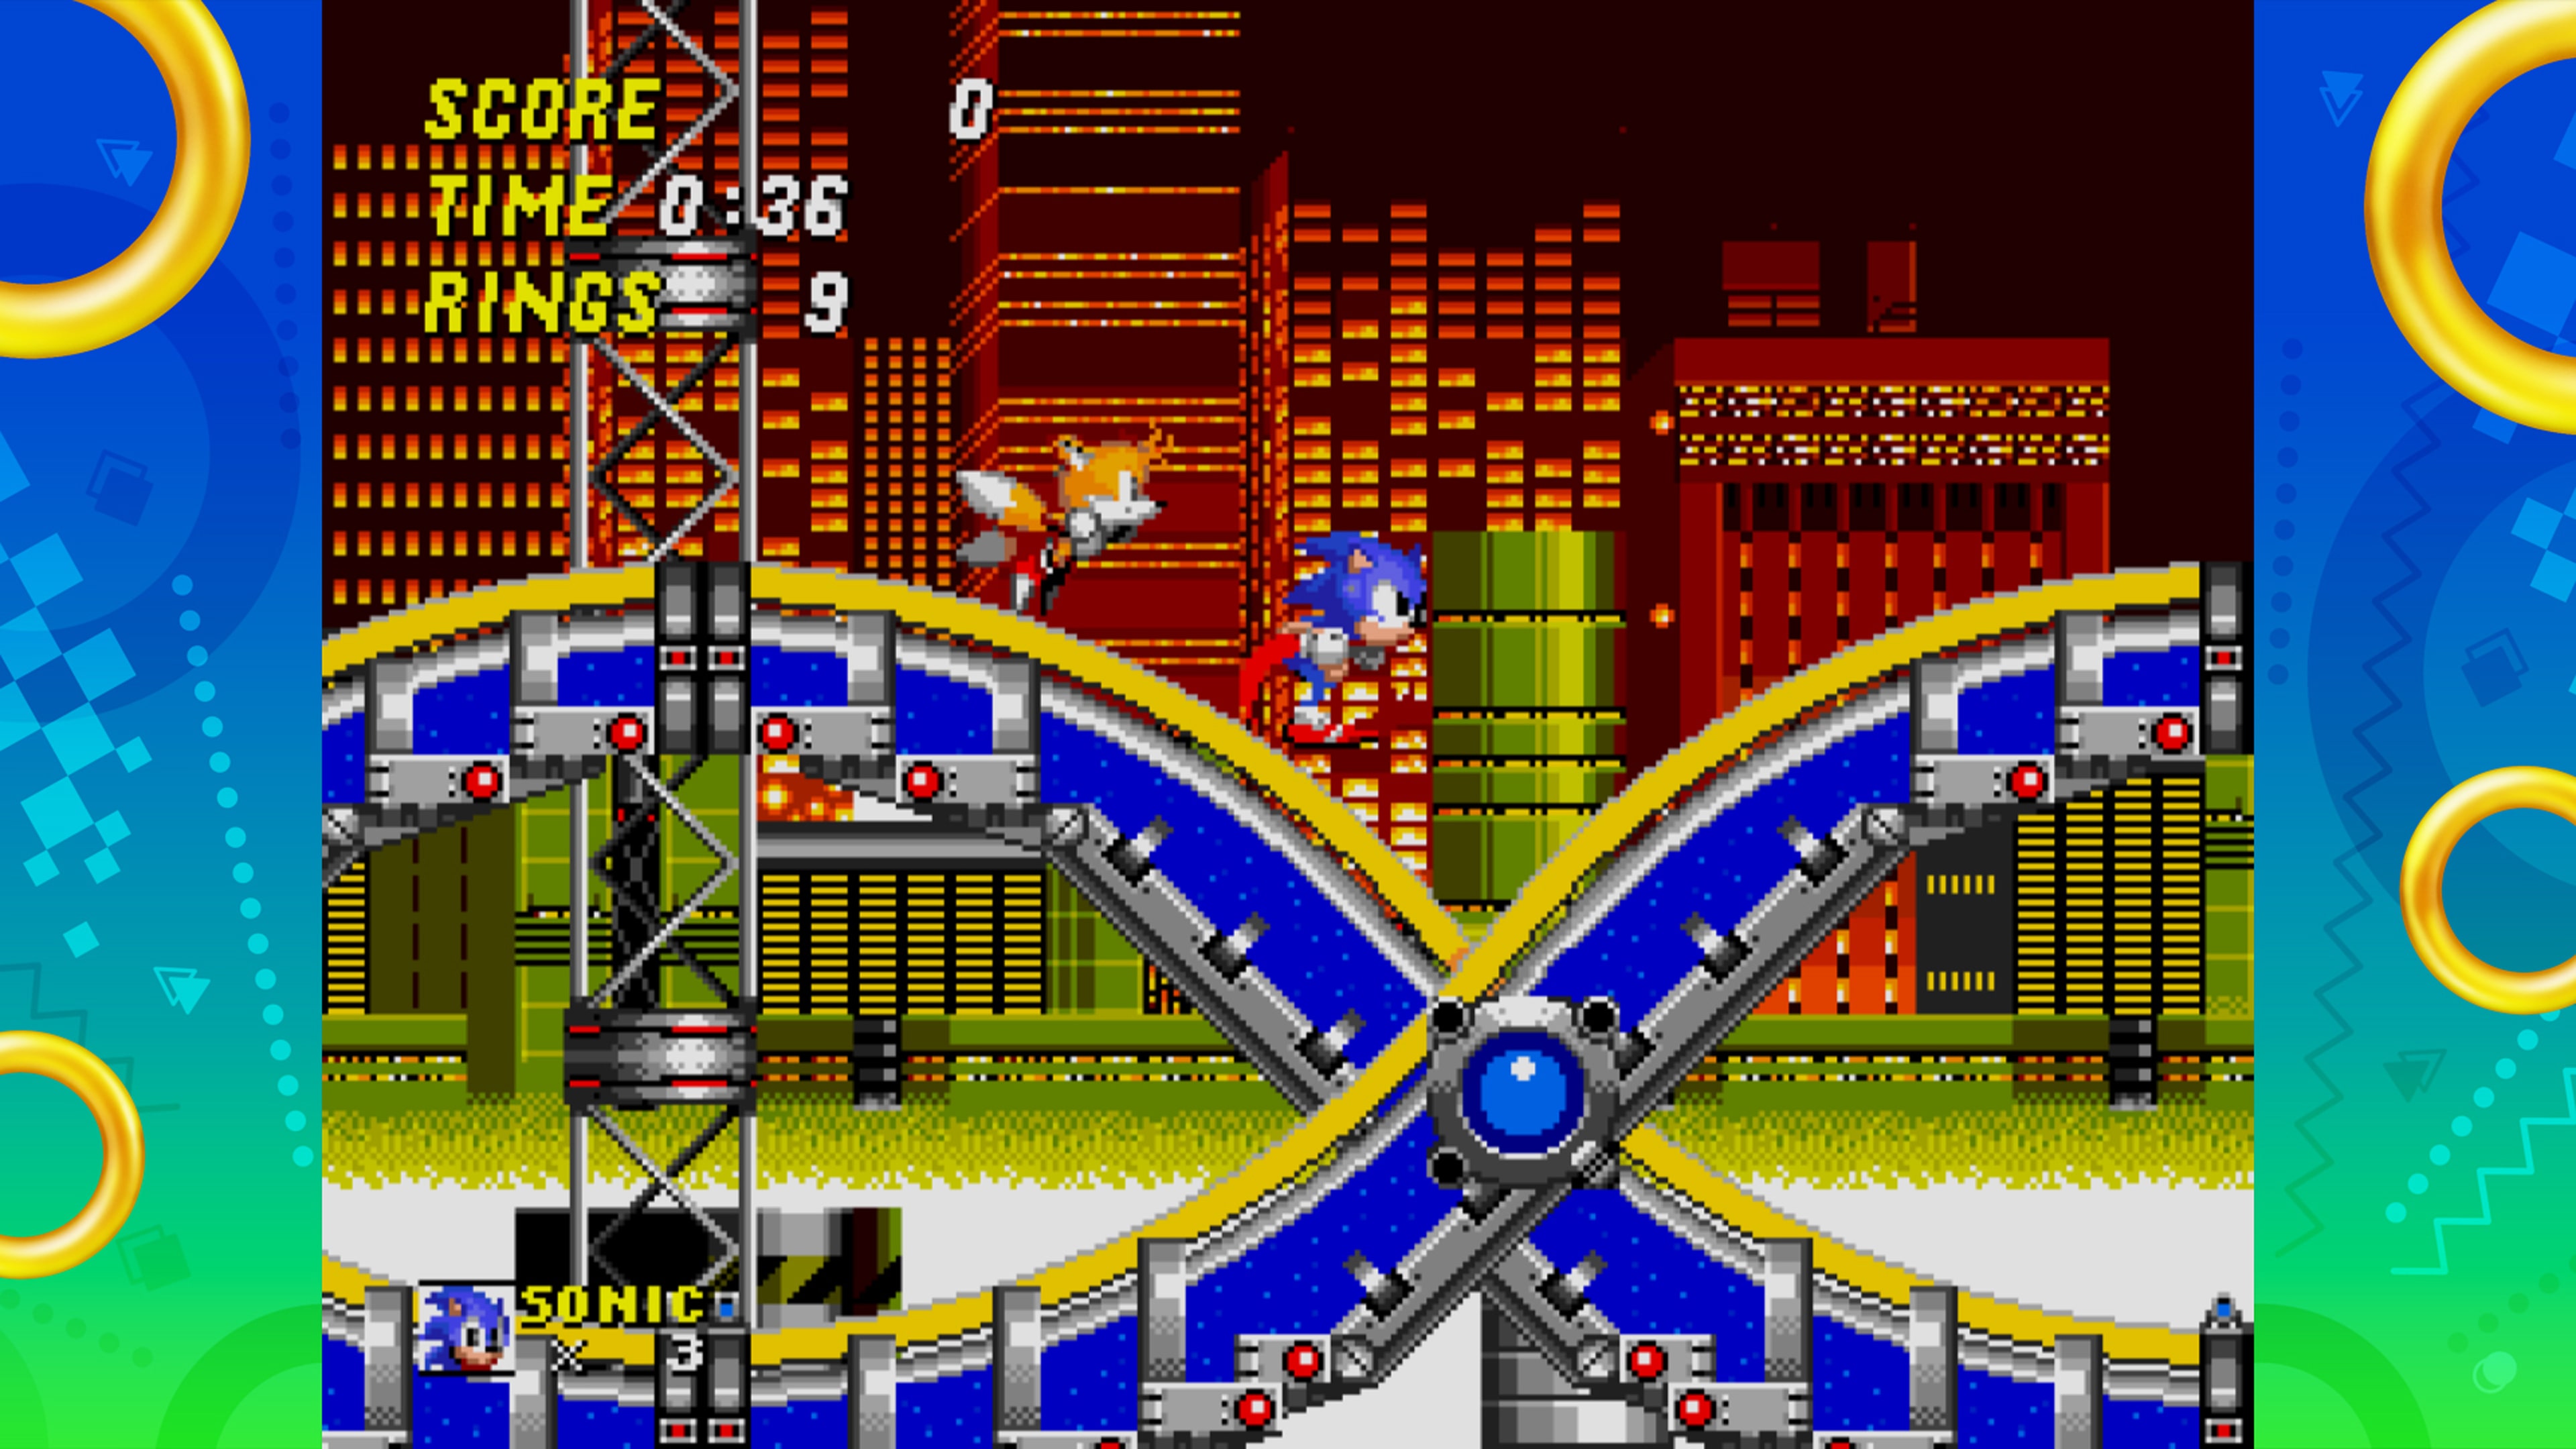 Sonic Origins Plus PS4 - Cadê Meu Jogo